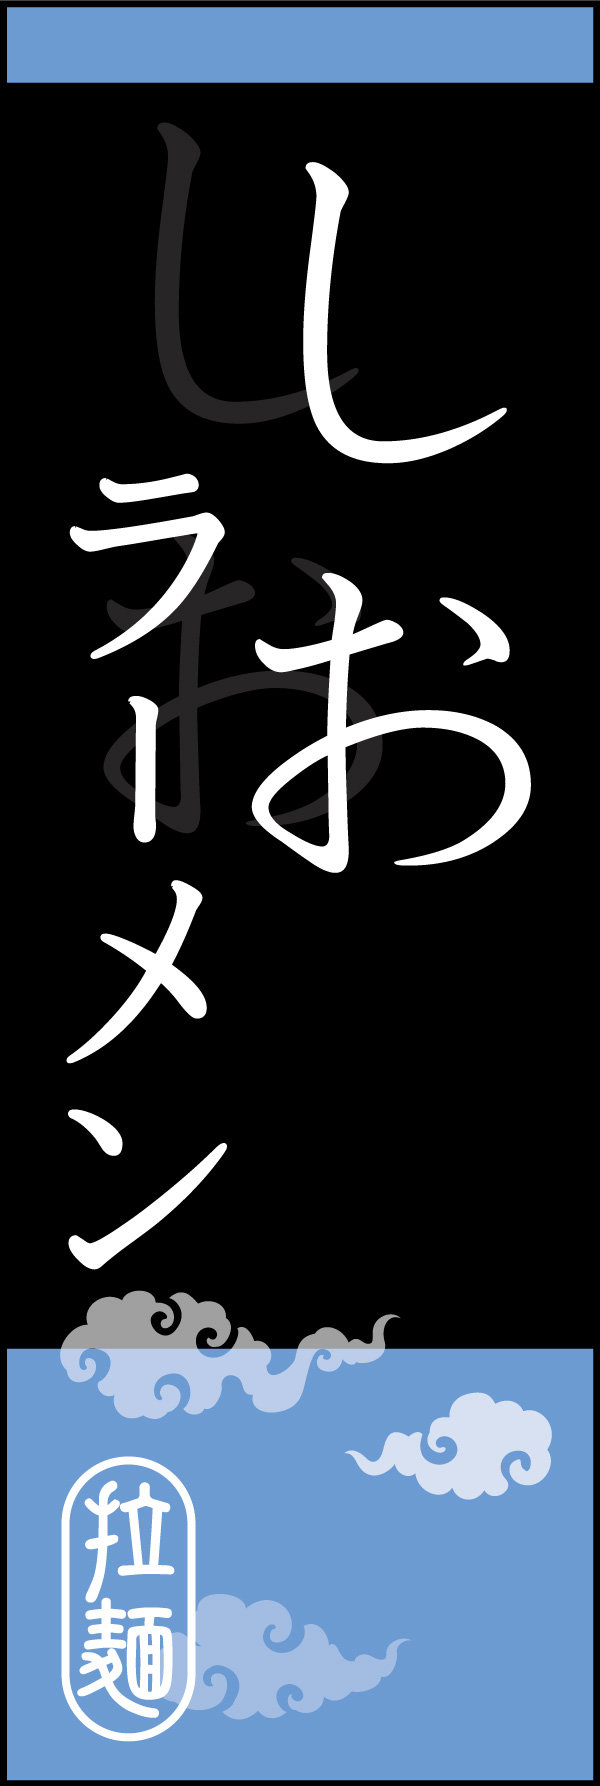 しお 04 「塩らーめん」のぼりです。オシャレな文字表現とレイアウトで「新」中華デザインの完成！(K.K)(Y.M)